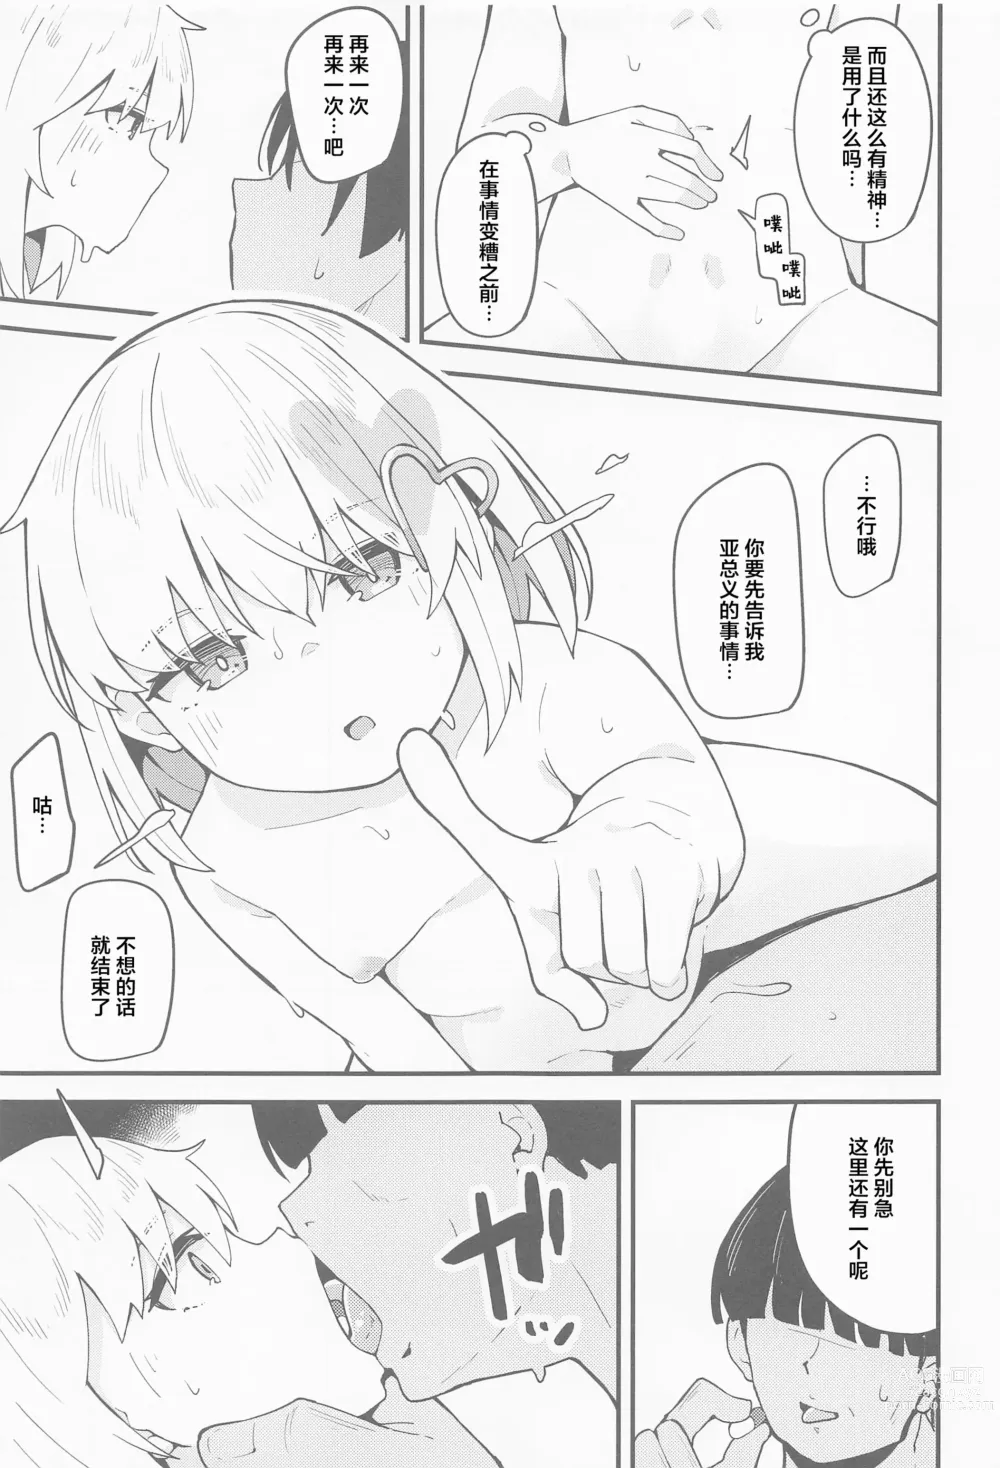 Page 14 of doujinshi Haru Uri Porno